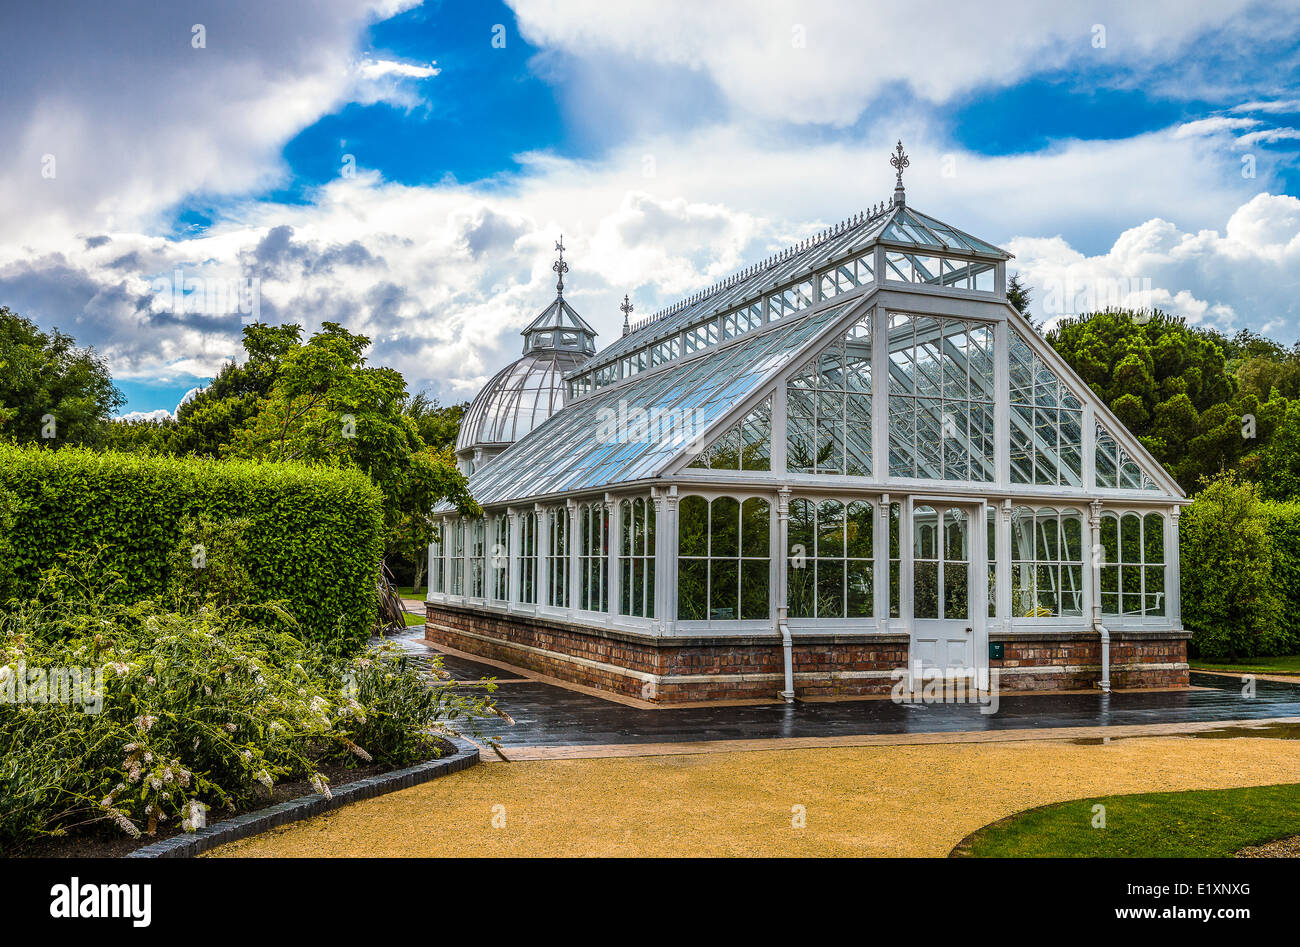 Ireland, Dublin county, the Victoria green house in the Malahide garden Stock Photo